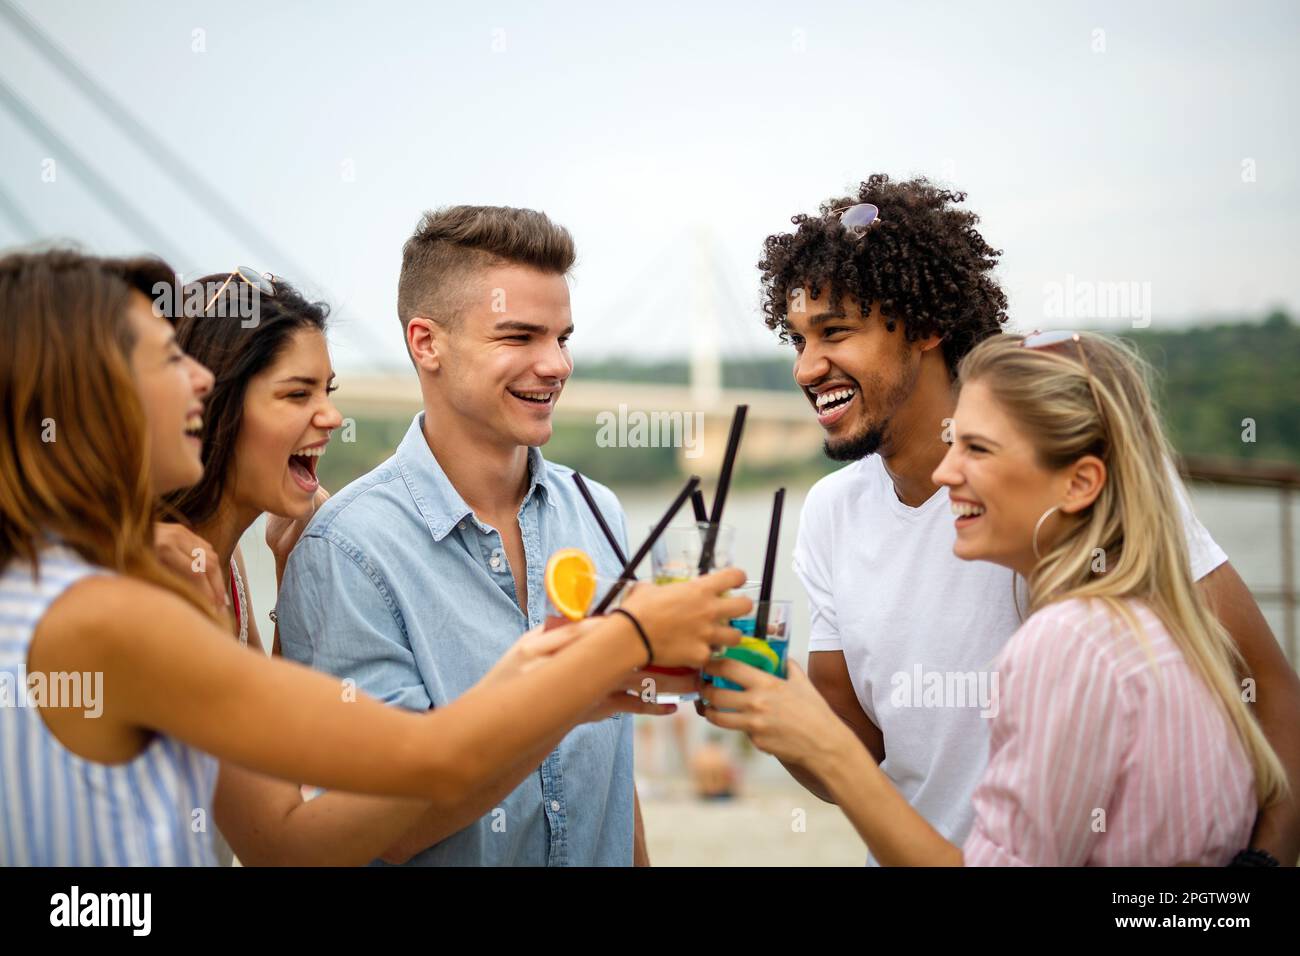 La joie d'été et l'amitié avec les jeunes en vacances. Concept de bonheur des gens. Banque D'Images